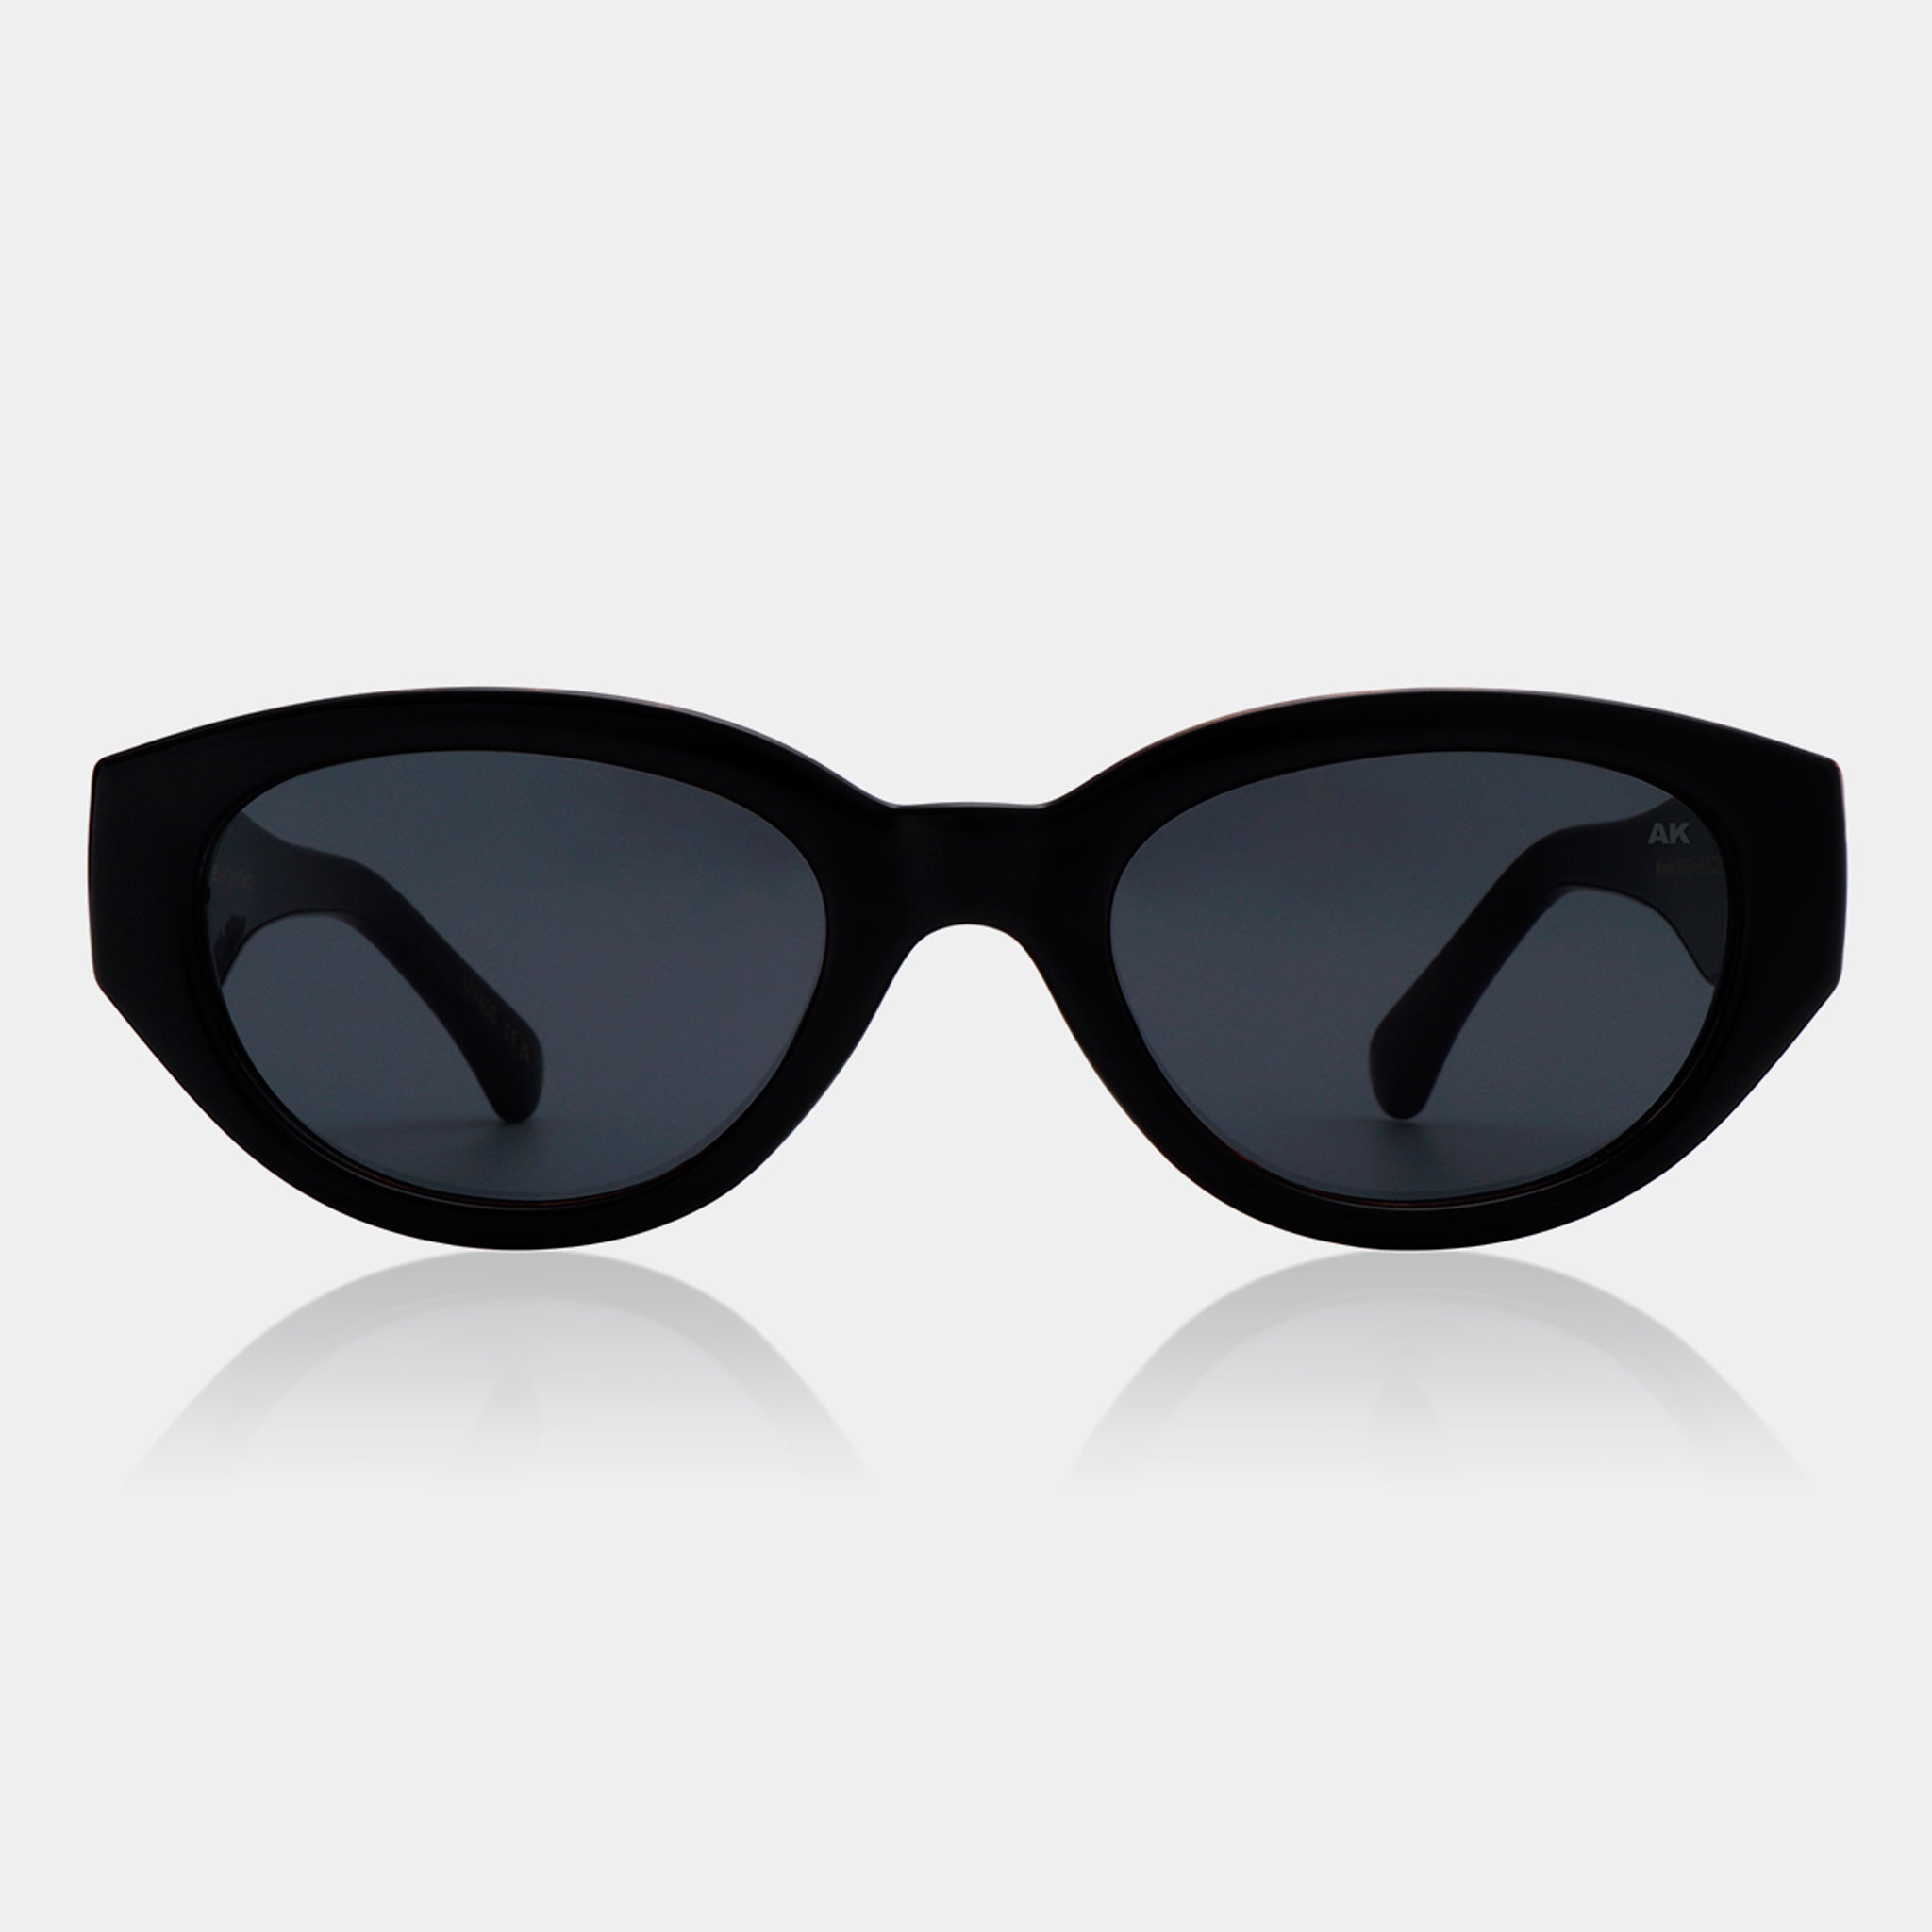 A.Kjaerbede Sunglasses - Winnie - Black